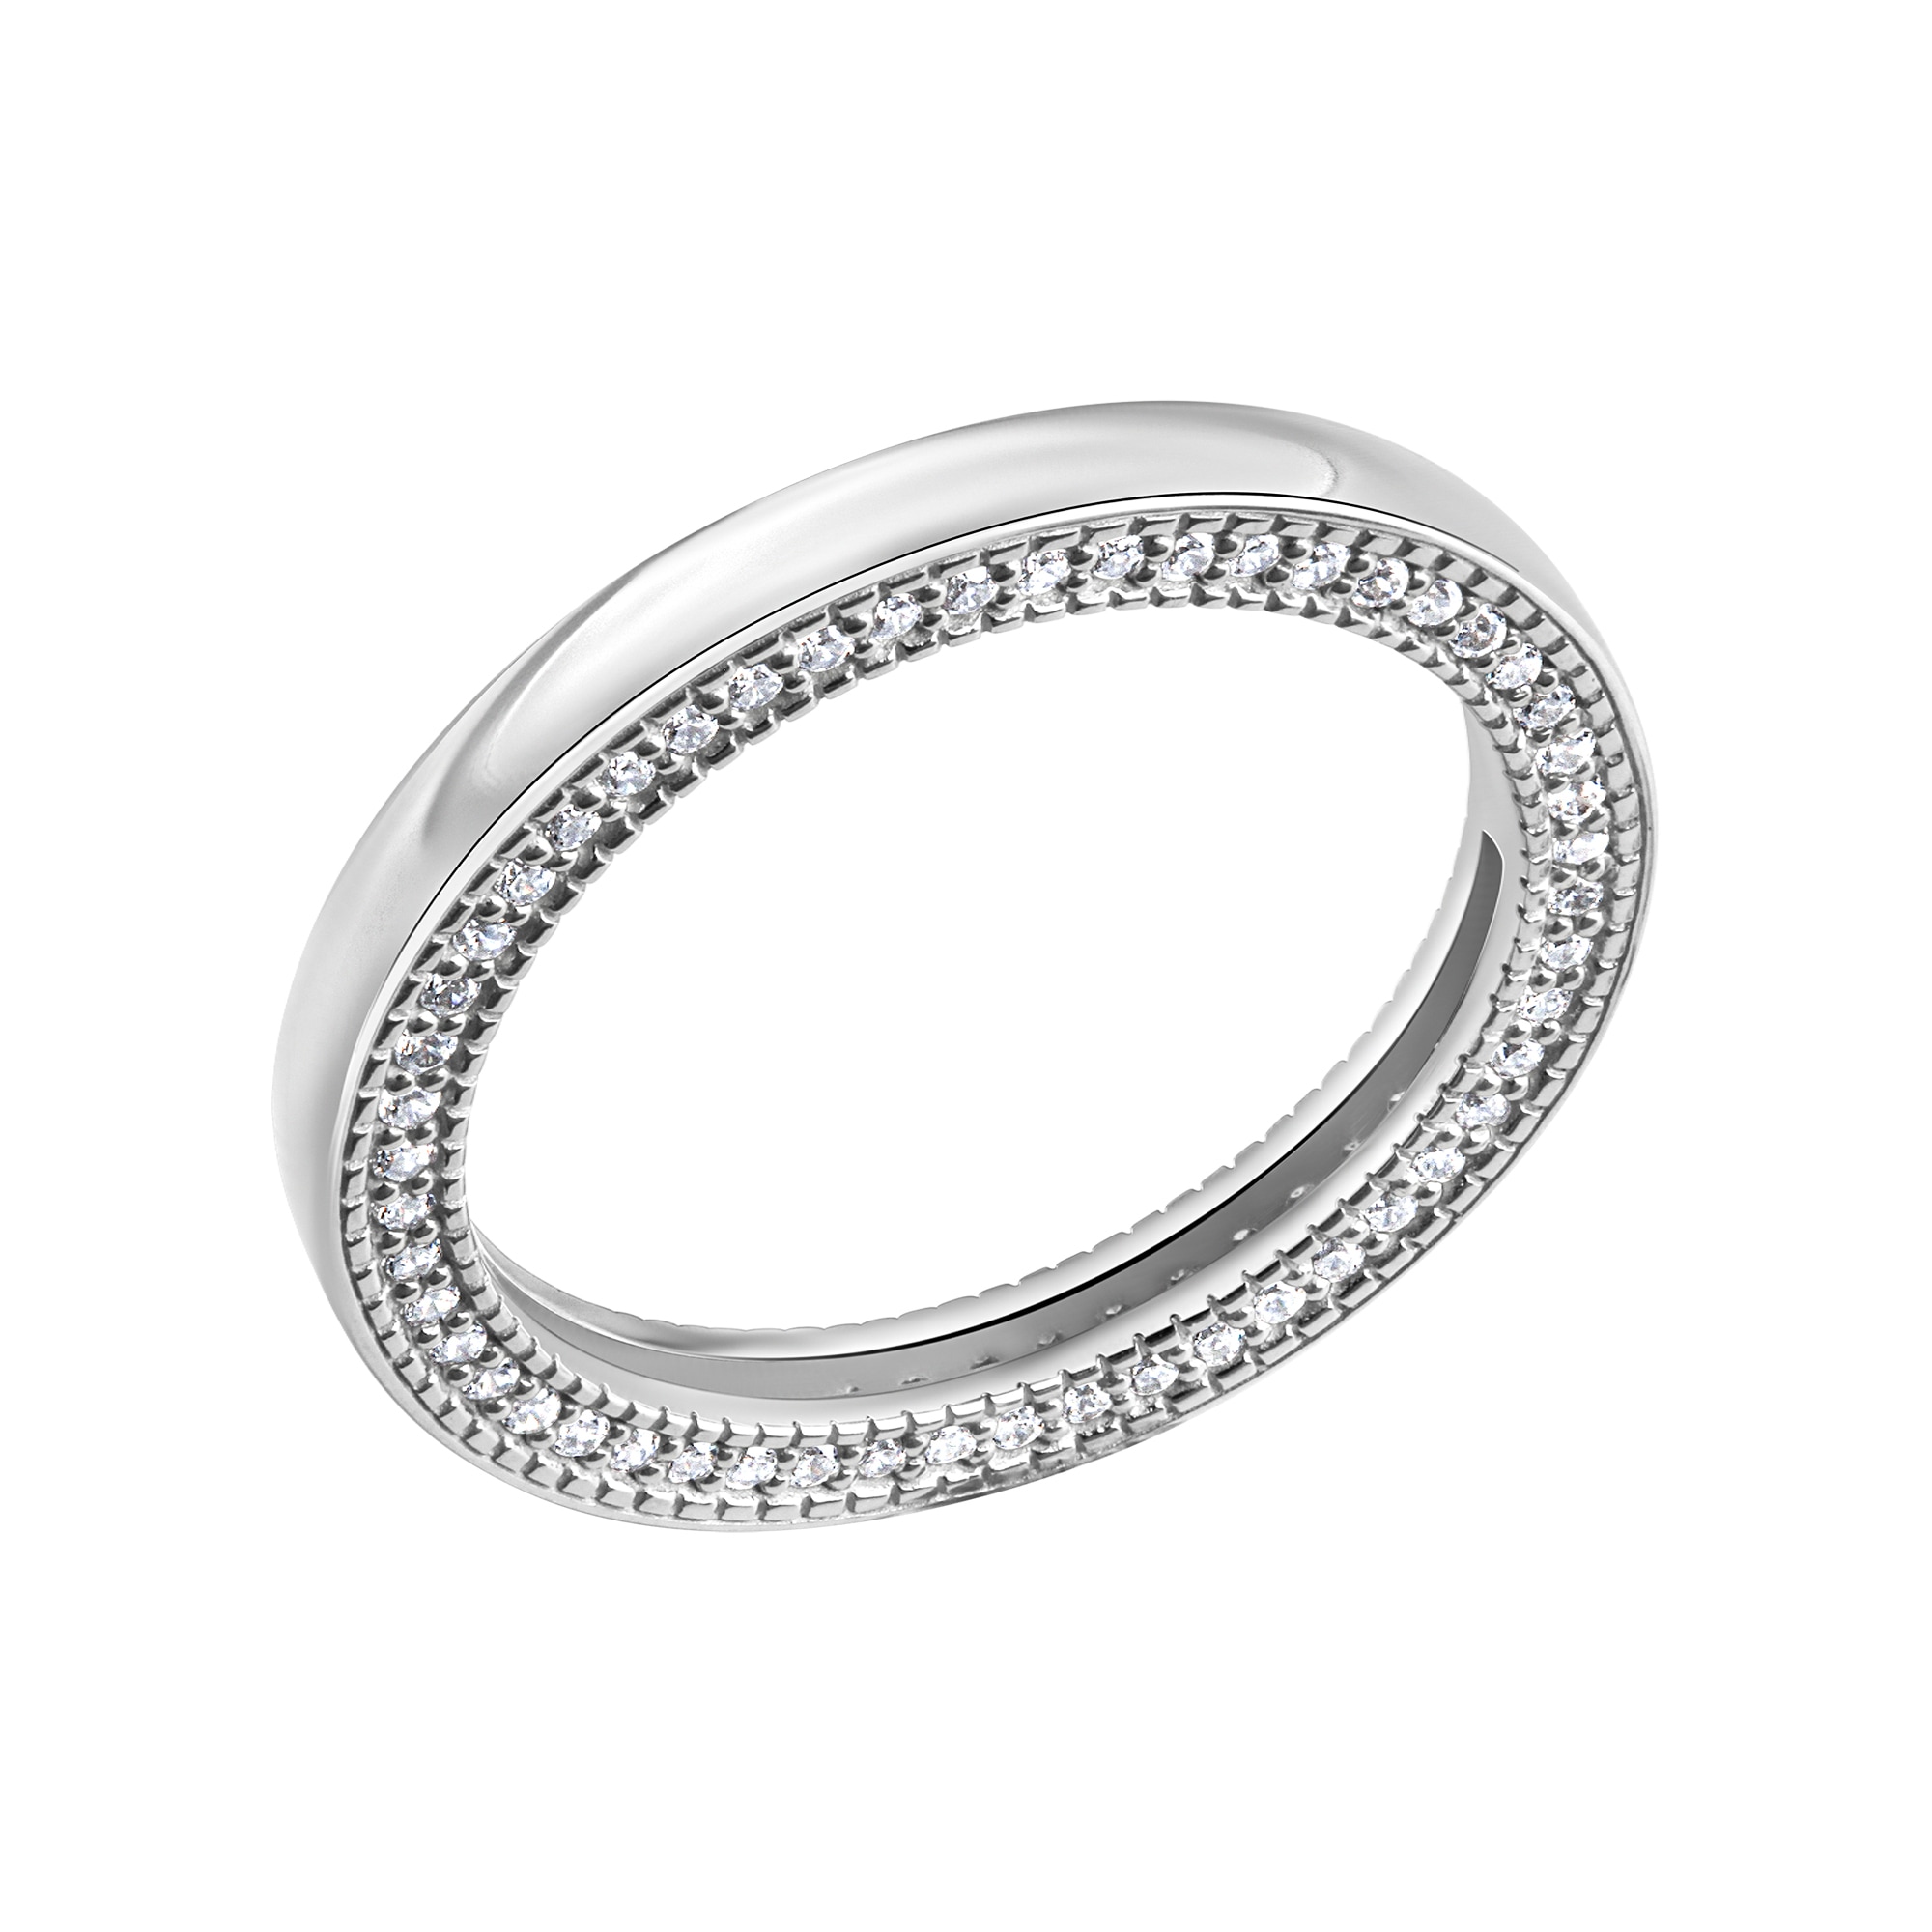 CELESTA Fingerring »925 Silber mit weißen Zirkoniasteinen« online bestellen | Fingerringe